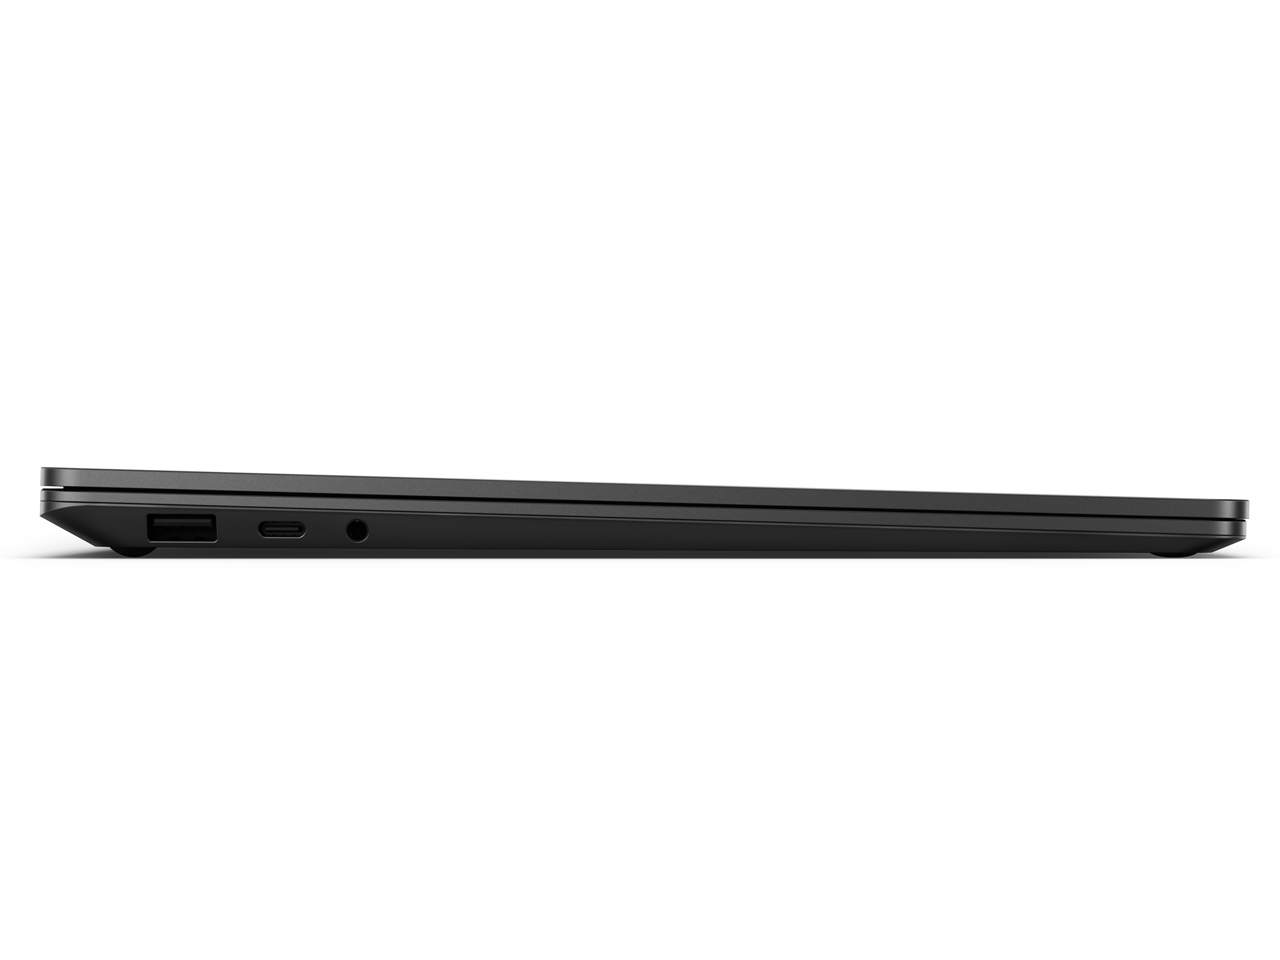 価格.com - 『本体 左側面』 Surface Laptop 3 13.5インチ V4C-00039 [ブラック] の製品画像